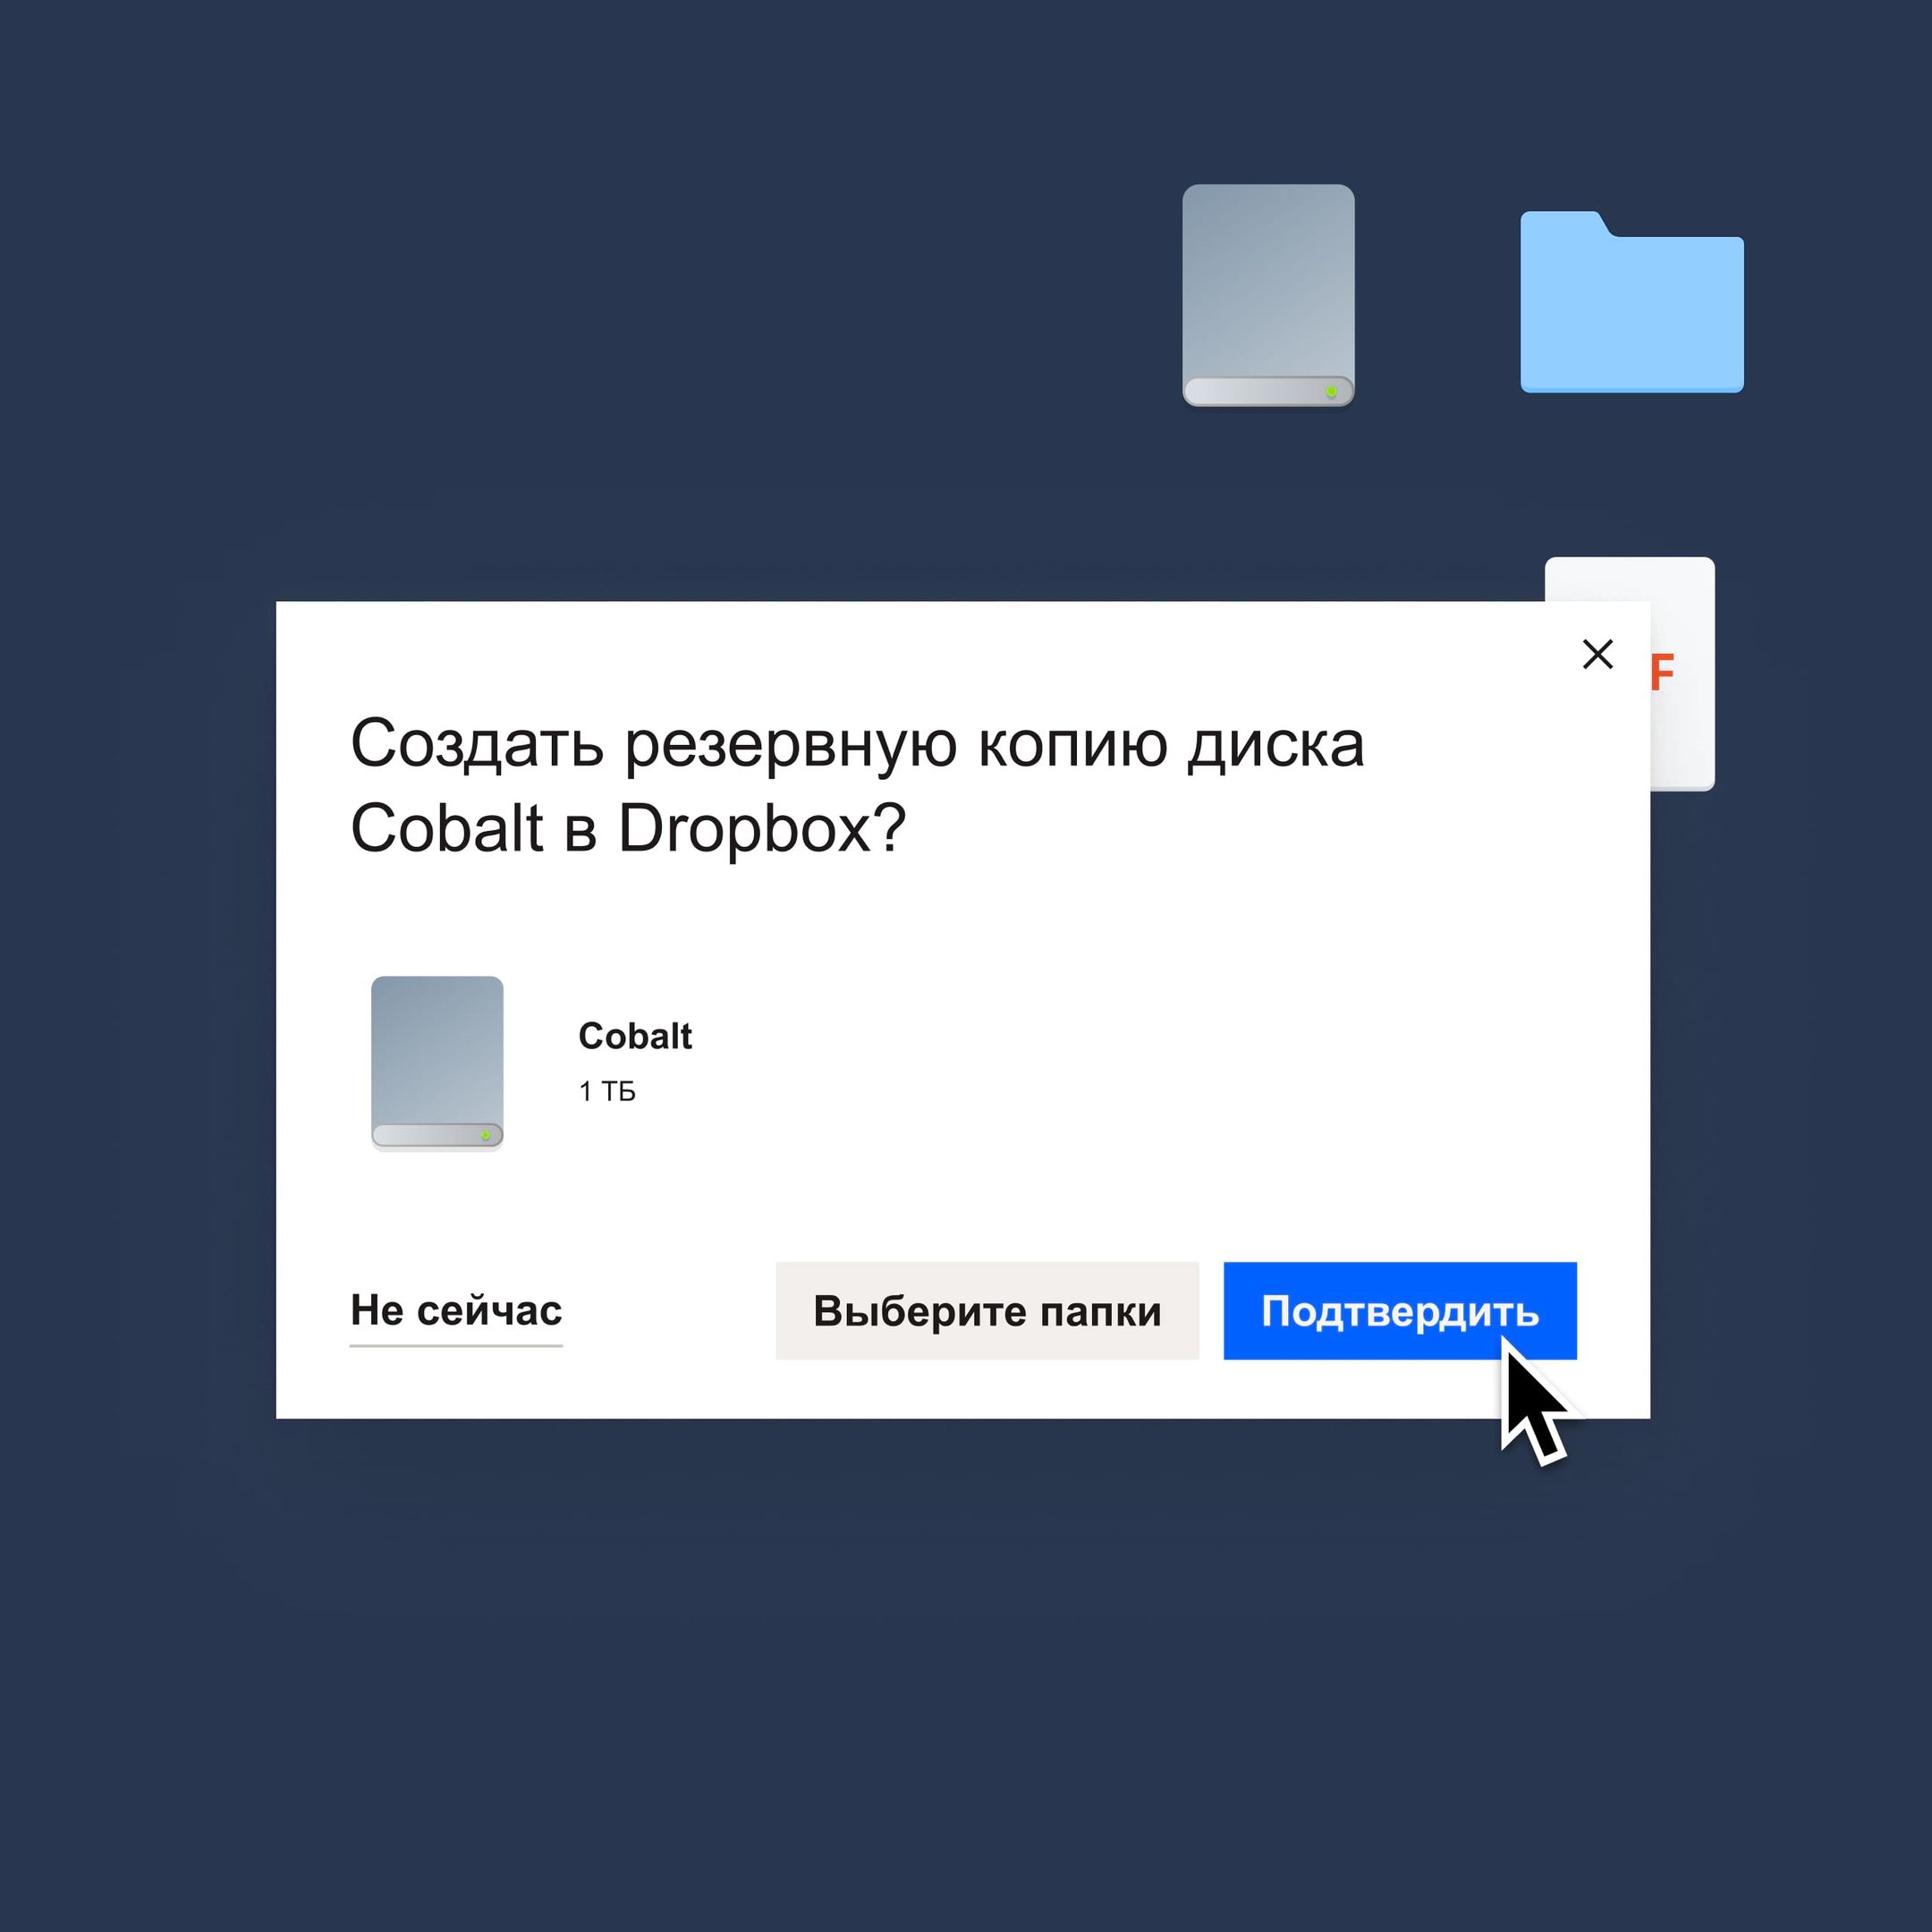 Пользователь нажимает на синюю кнопку «Подтвердить», чтобы создать резервную копию диска Cobalt в Dropbox